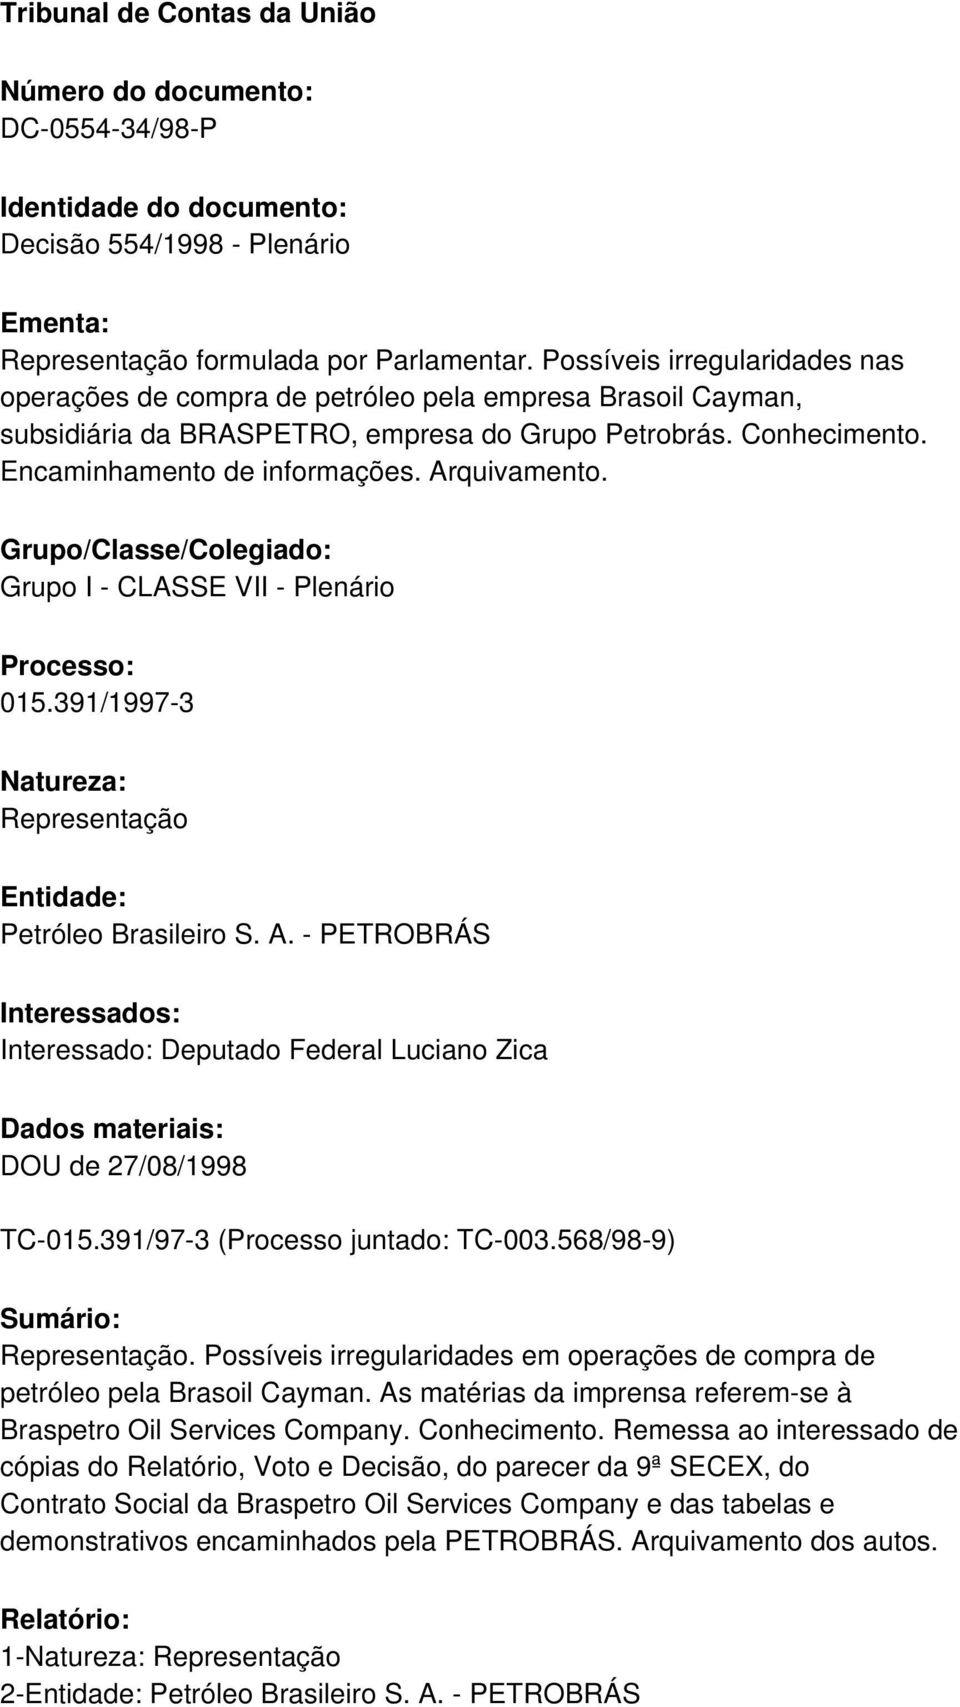 Arquivamento. Grupo/Classe/Colegiado: Grupo I - CLASSE VII - Plenário Processo: 015.391/1997-3 Natureza: Representação Entidade: Petróleo Brasileiro S. A.